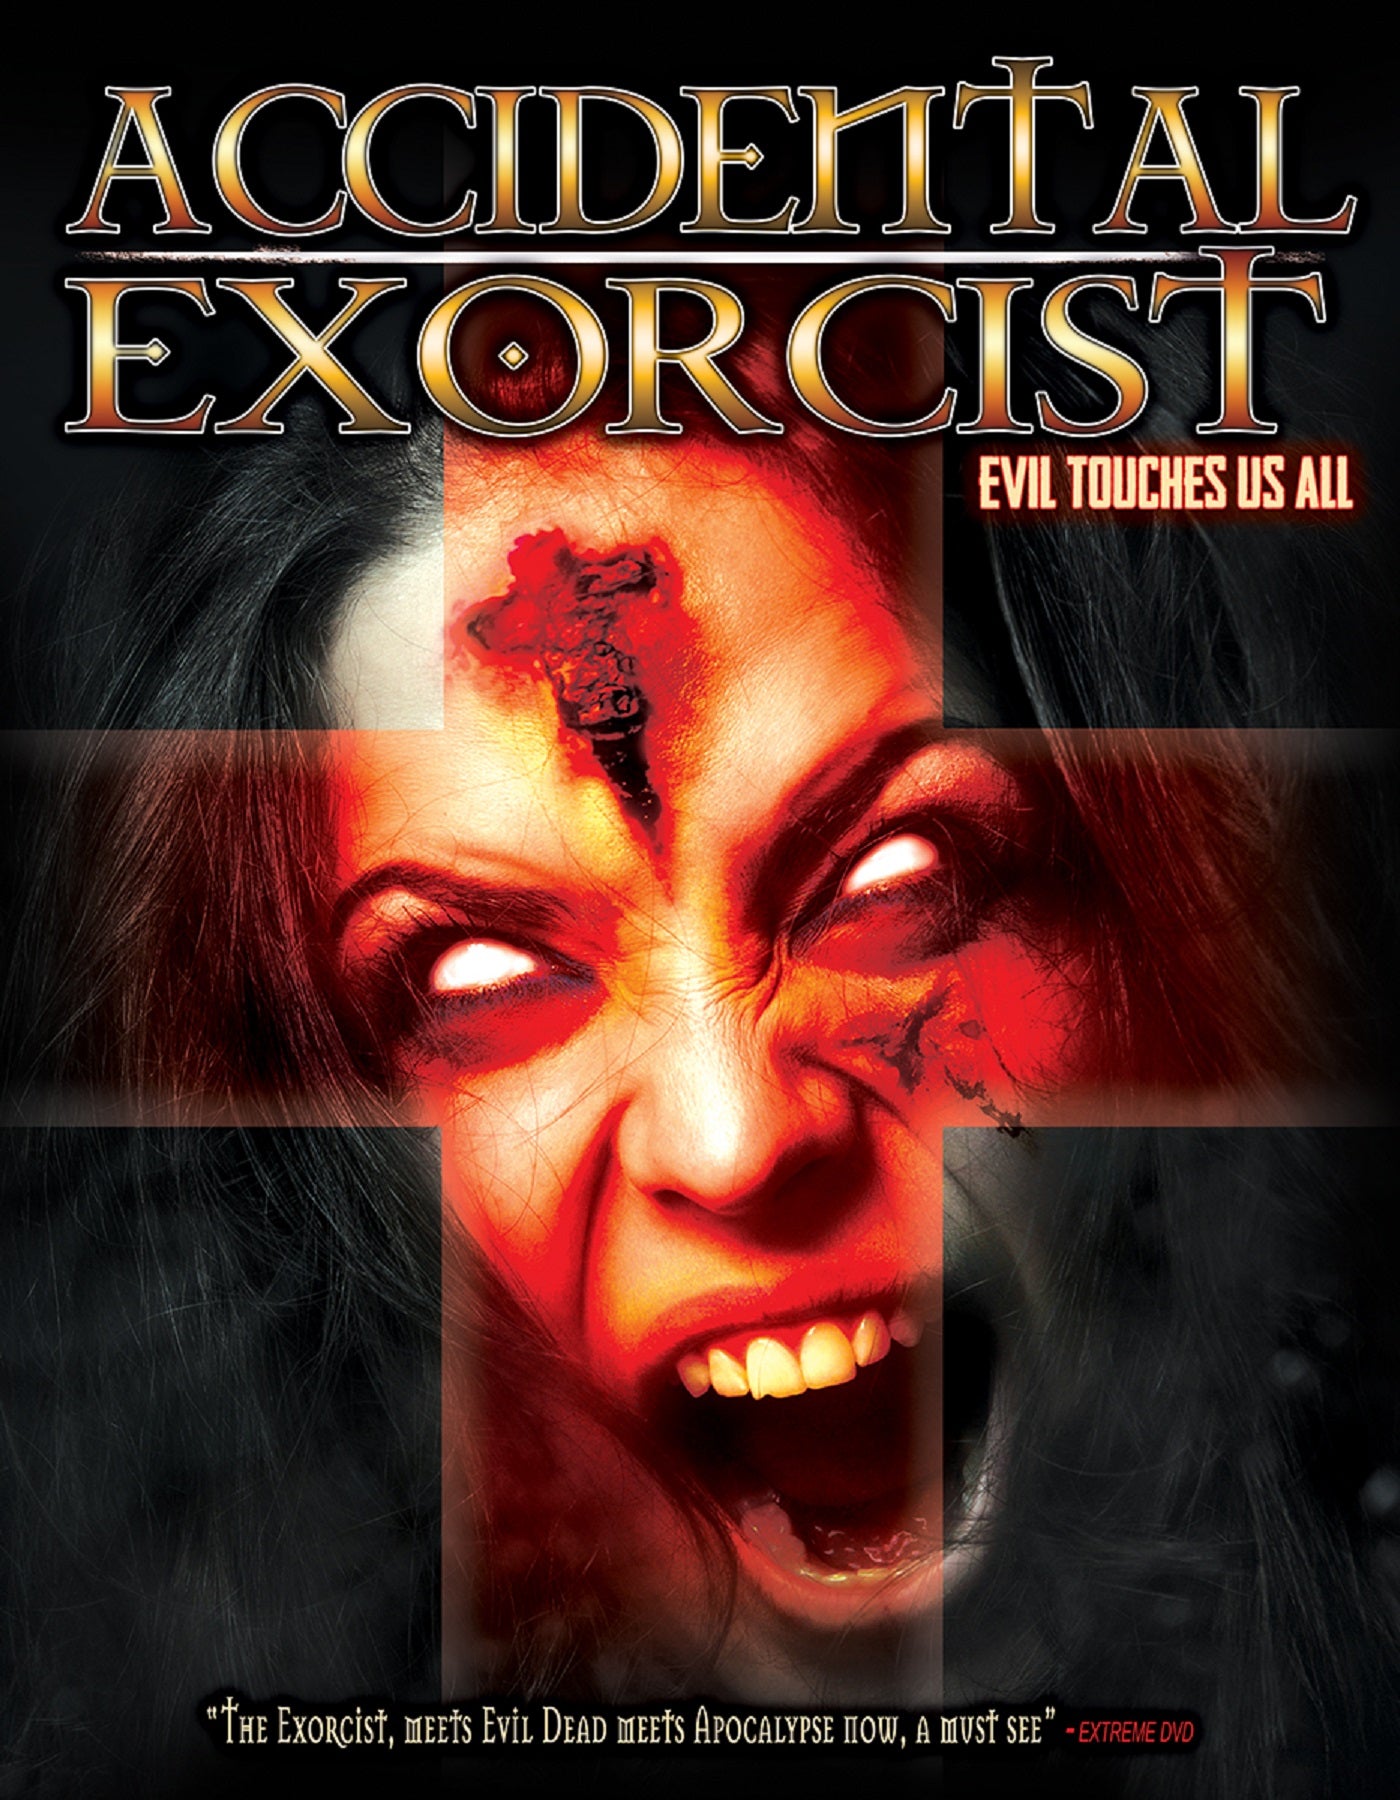 ACCIDENTAL EXORCIST DVD